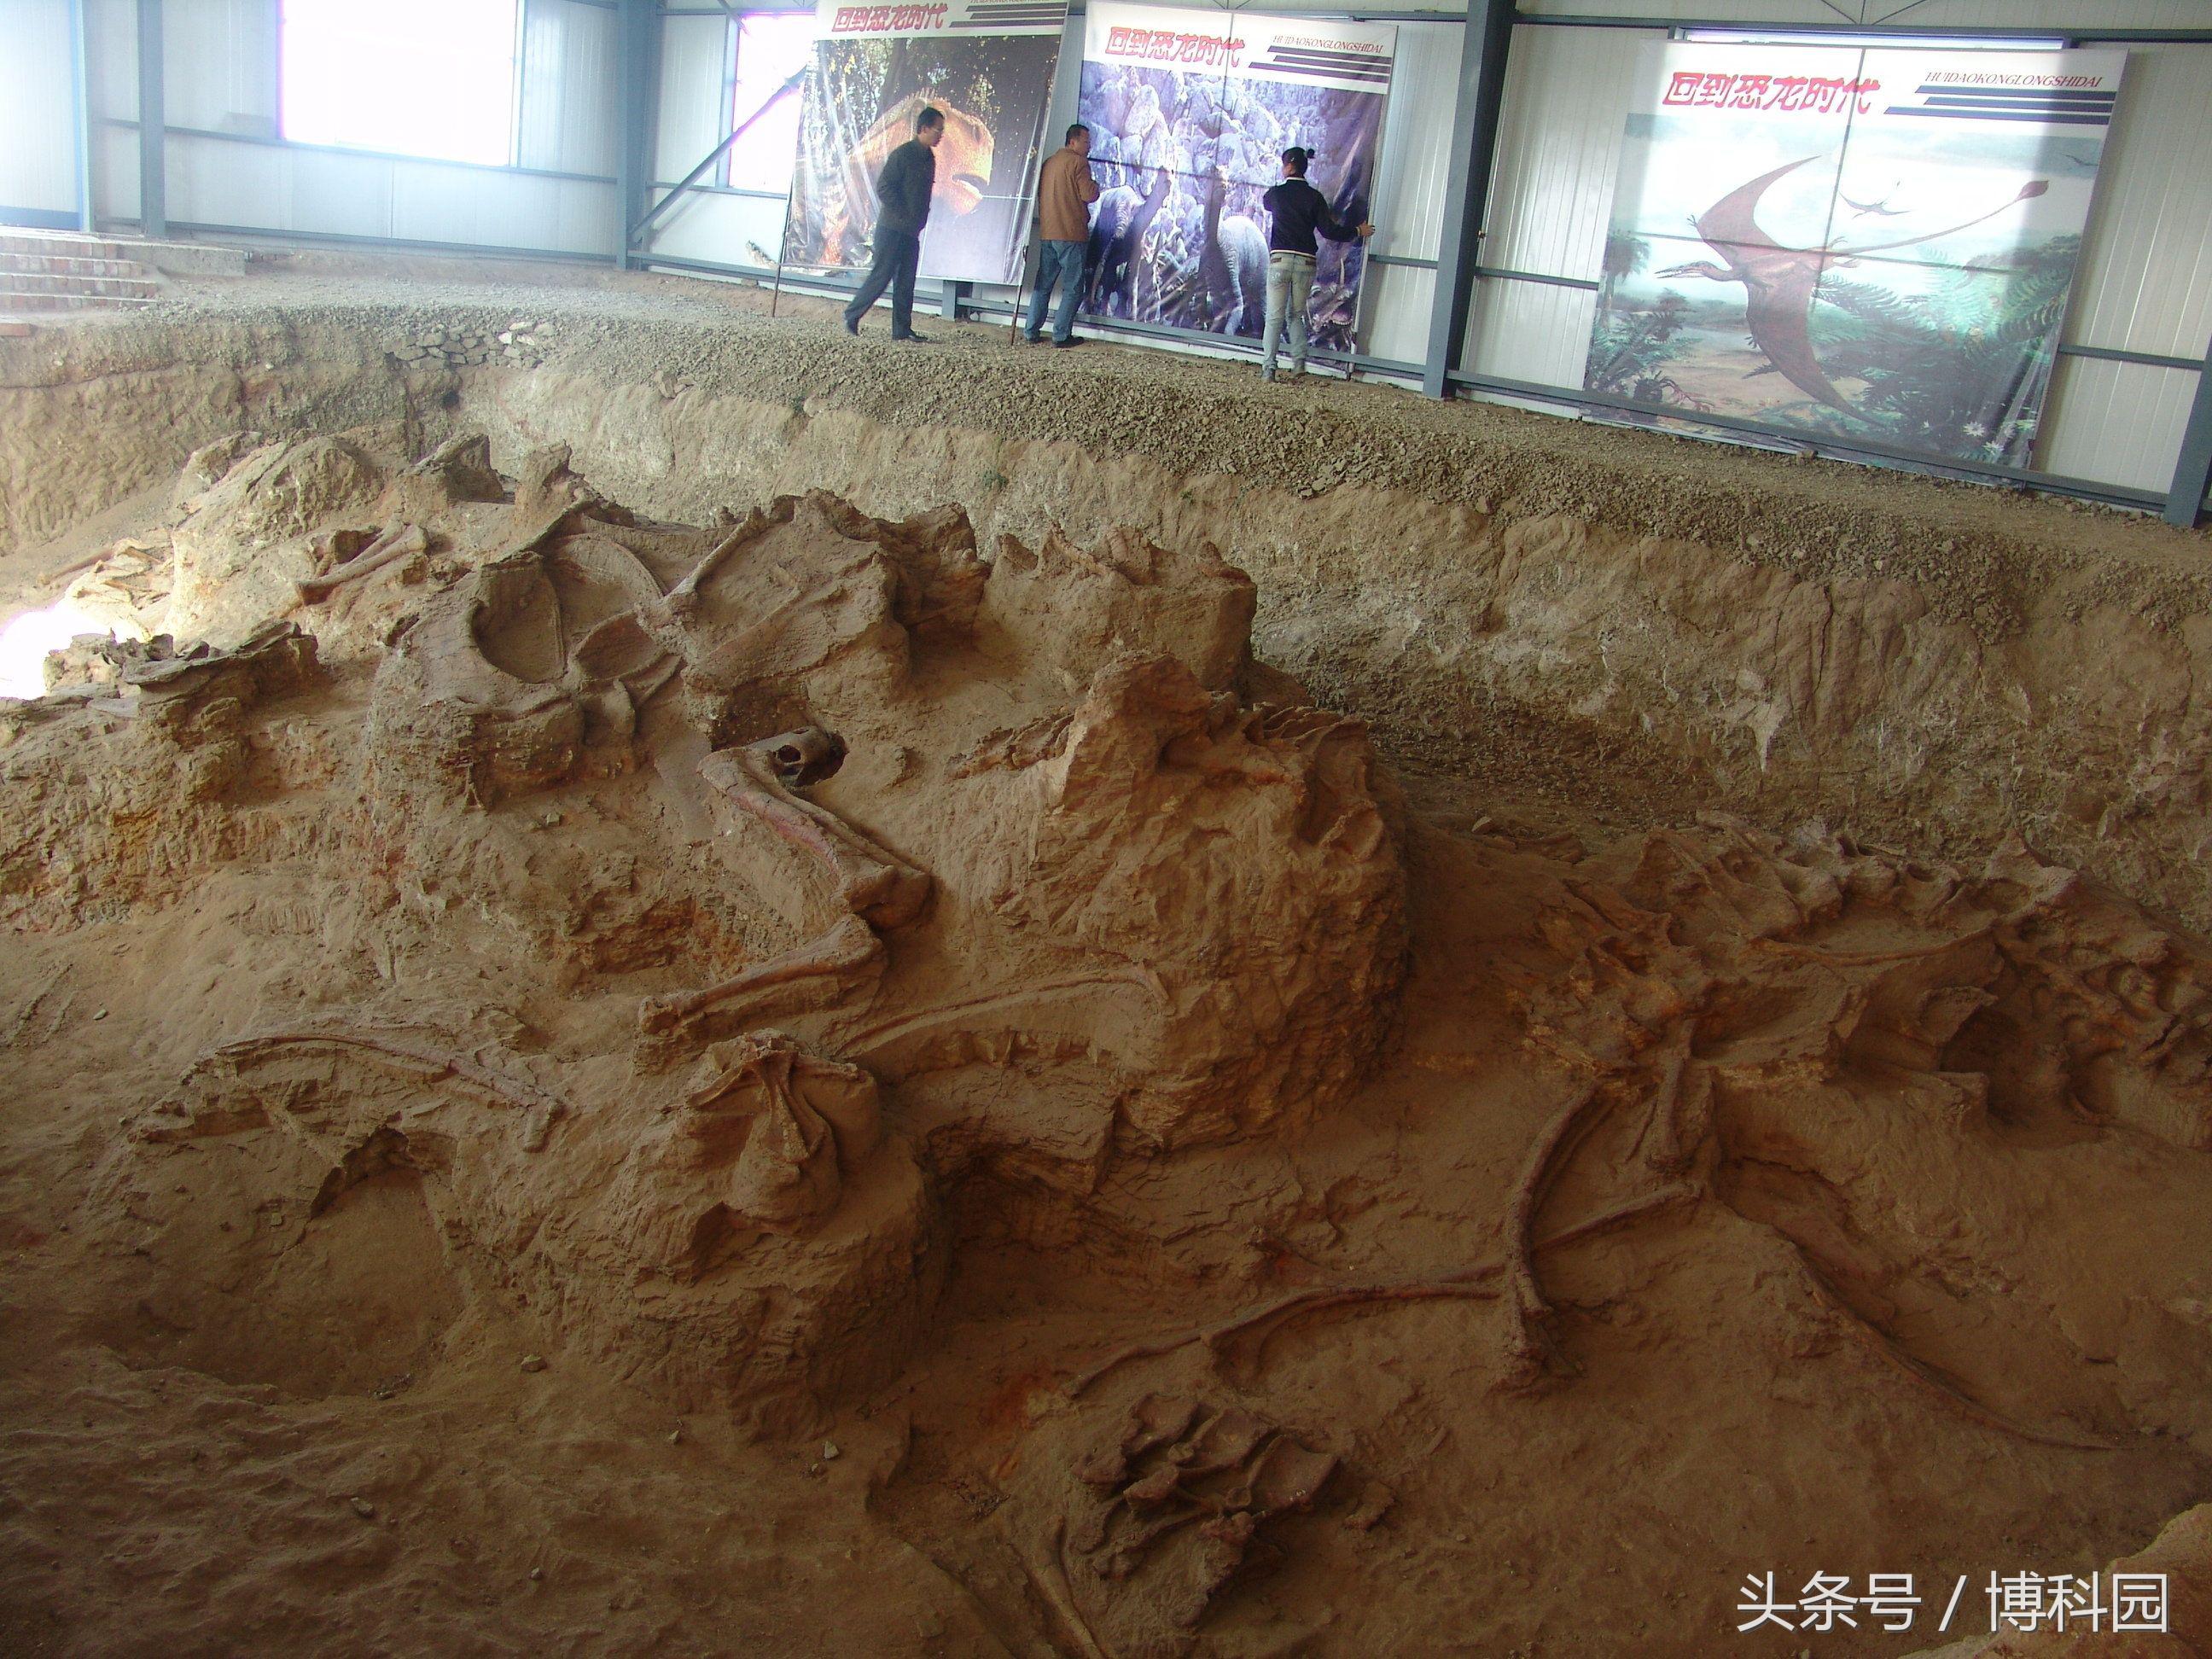 中国出土的“神奇龙”可以追溯到亚洲最早蜥脚类动物